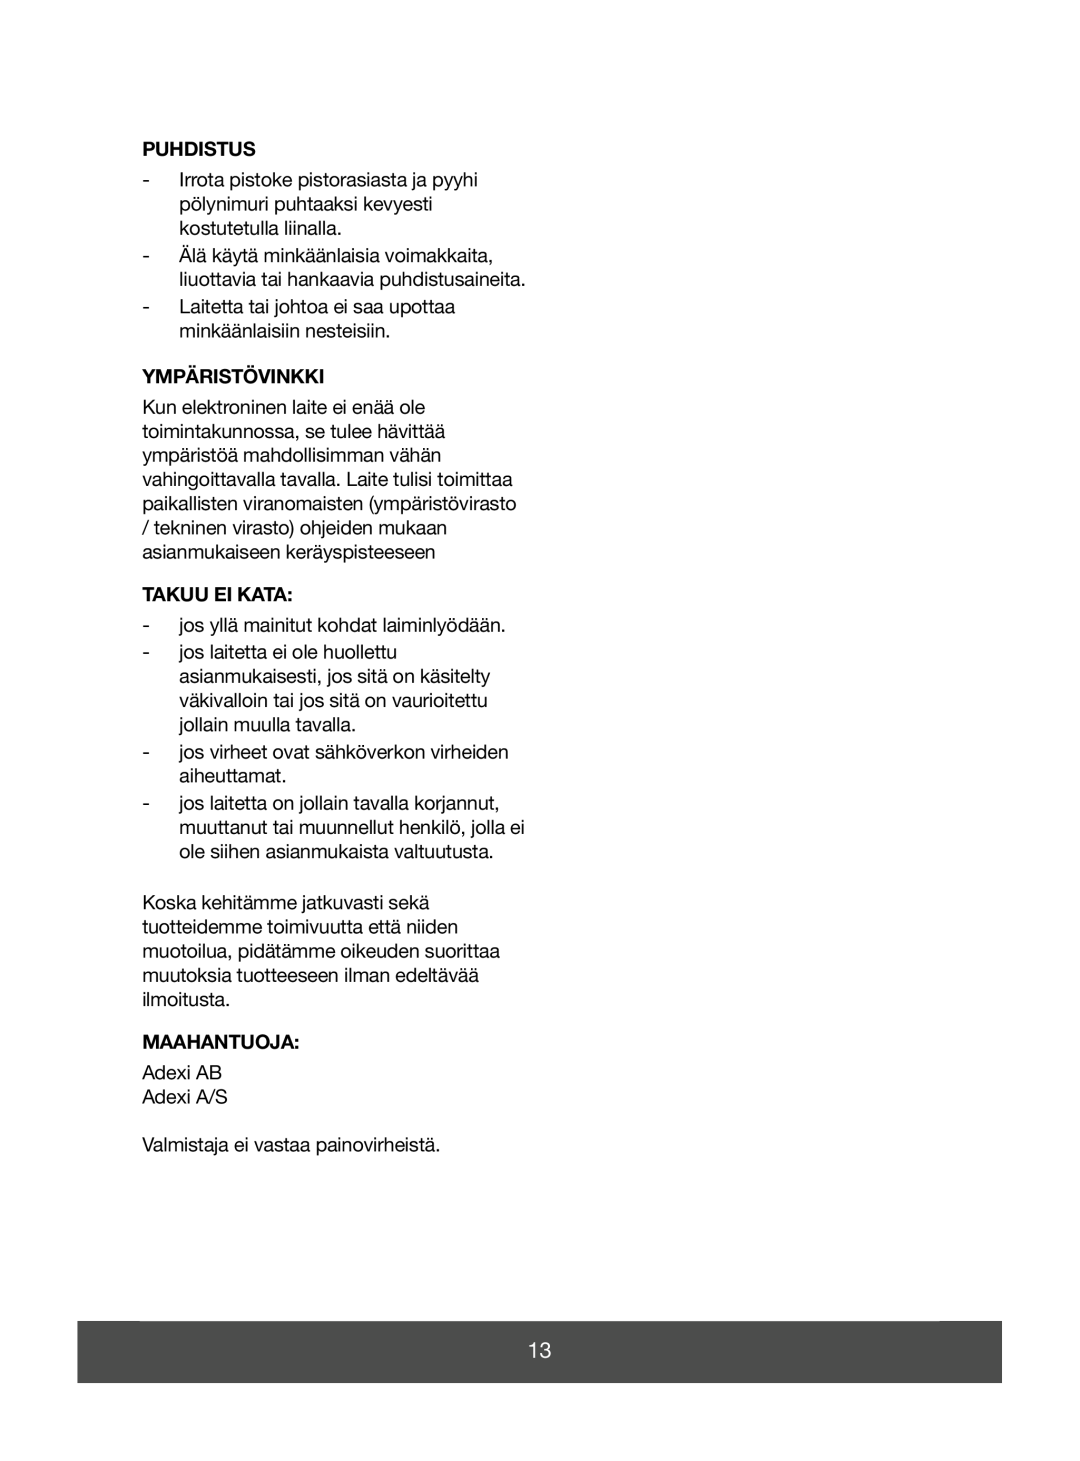 Melissa 640-049 manual Puhdistus, Ympäristövinkki, Takuu Ei Kata, Maahantuoja 